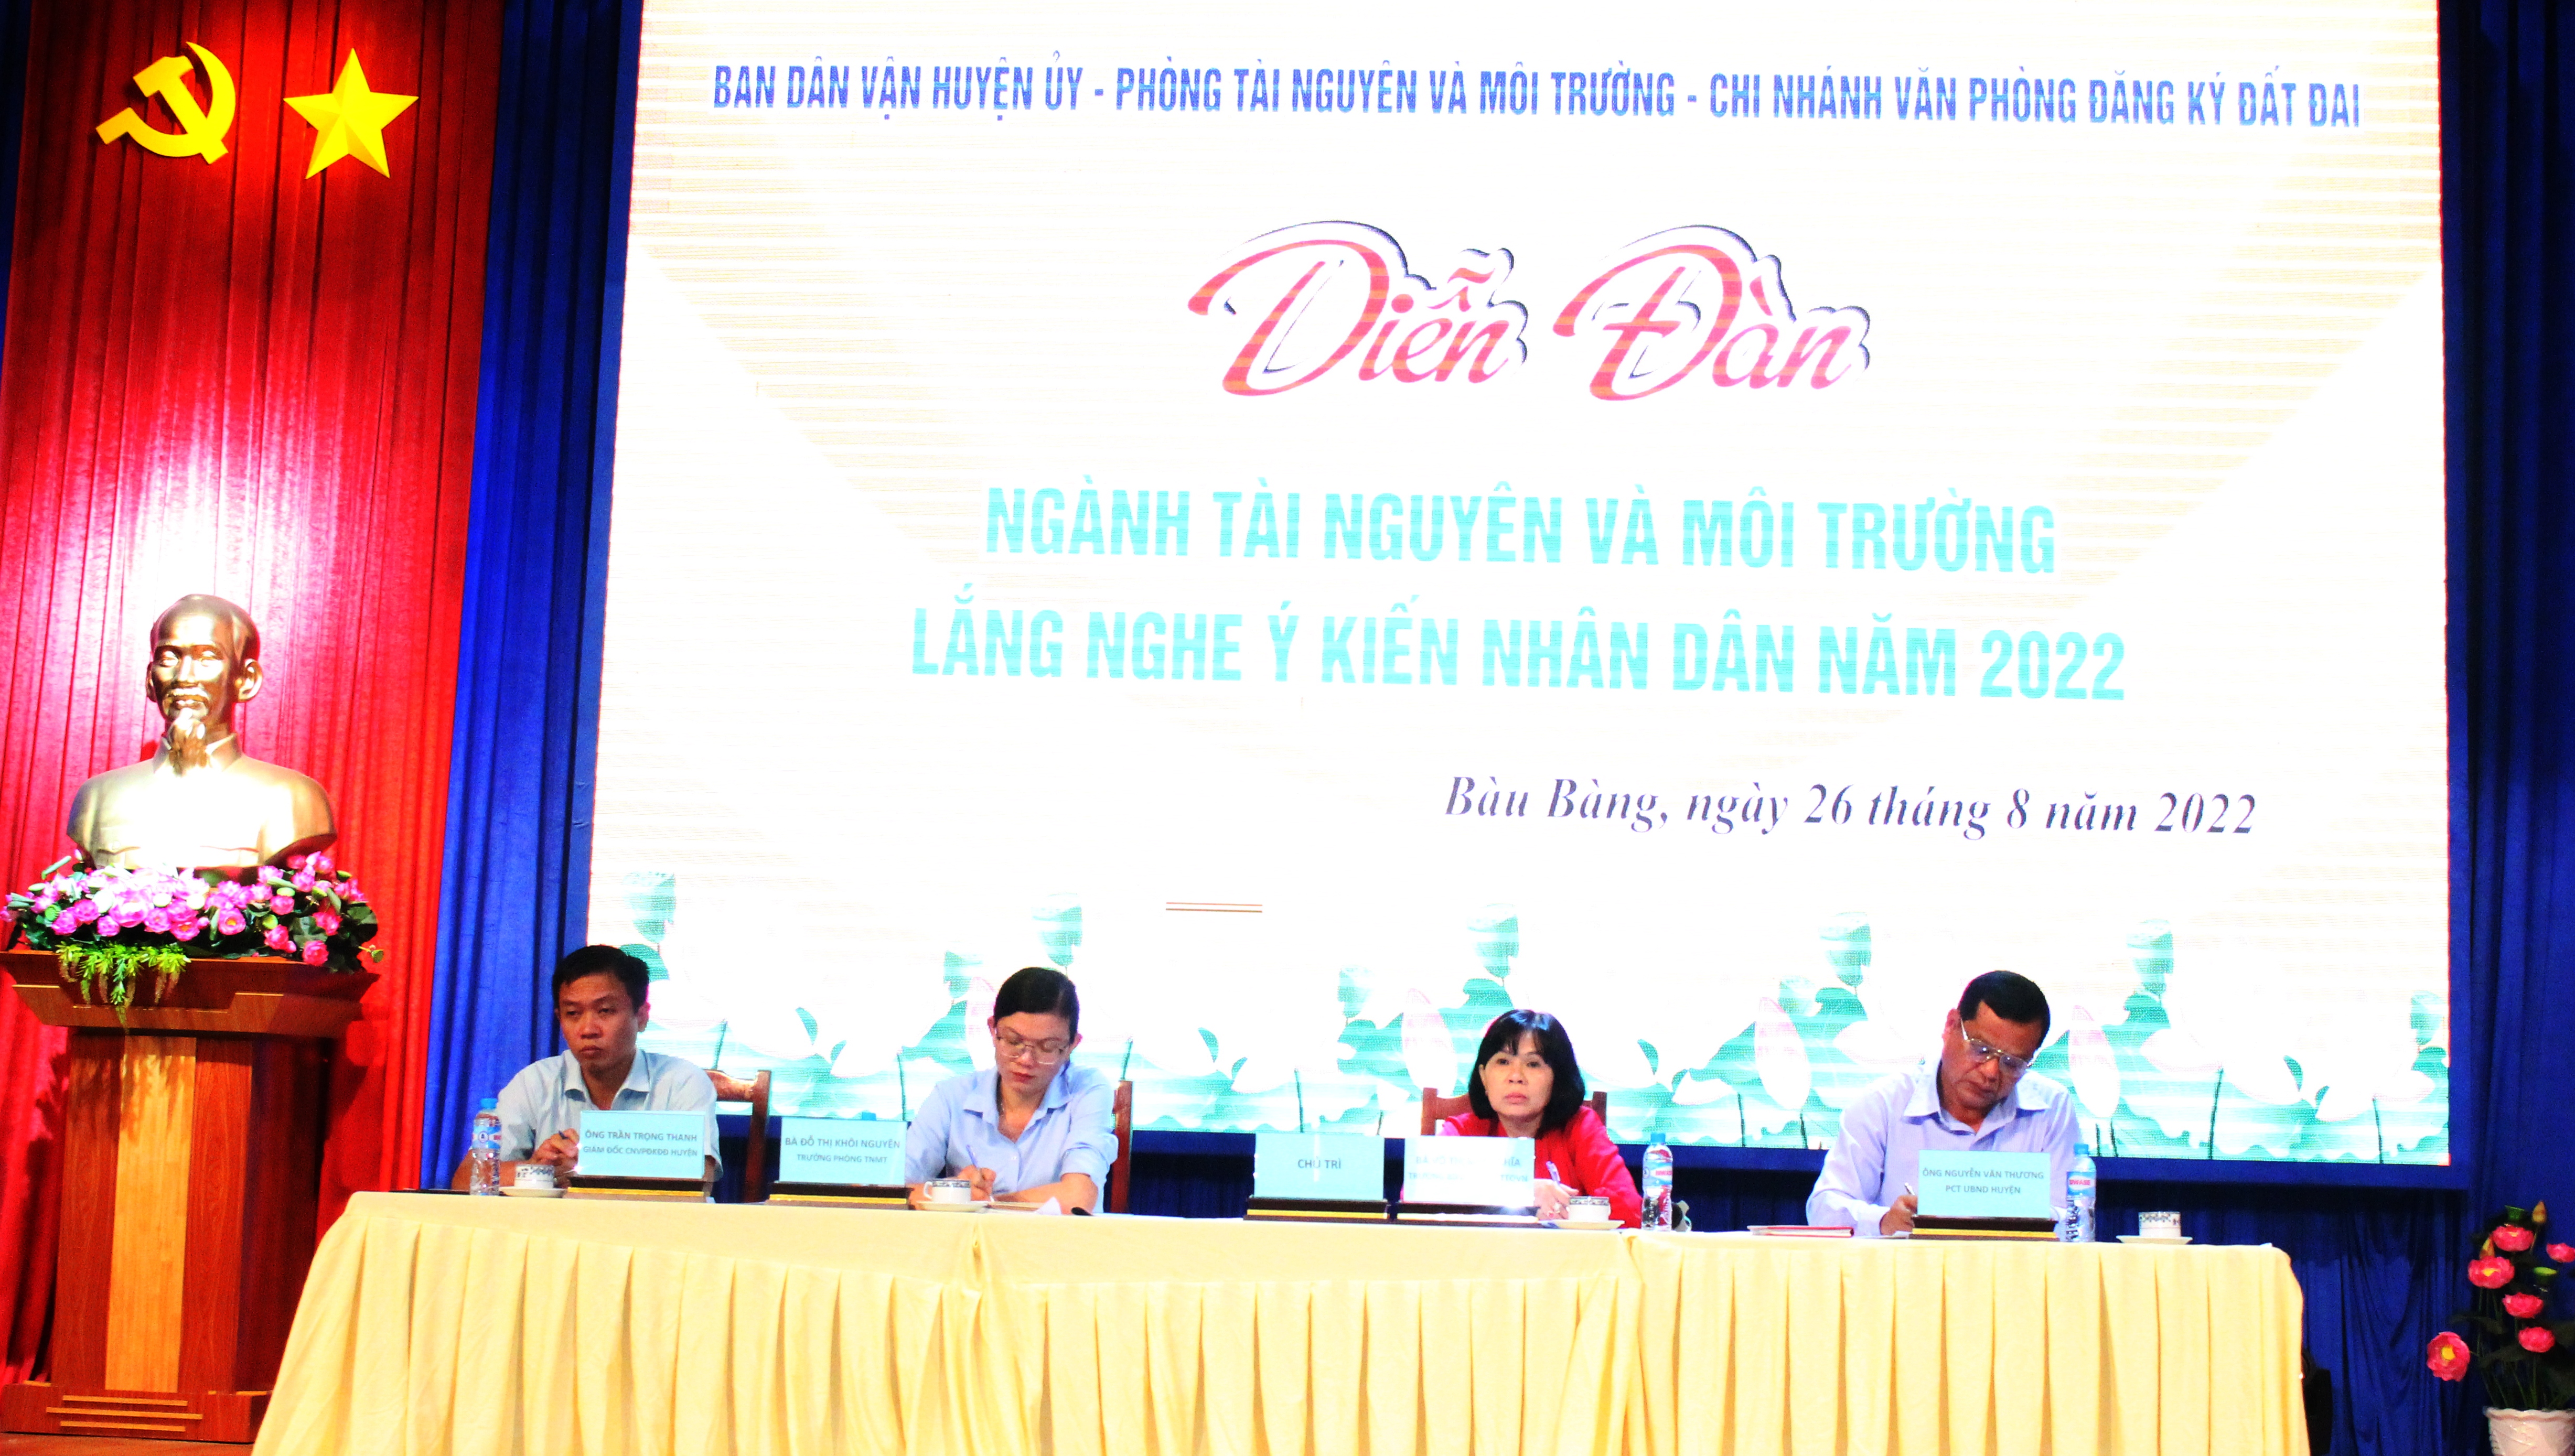 Lãnh đạo UBND huyện, lãnh đạo Ban Dân vận Huyện ủy và ngành Tài nguyên - Môi trường huyệnlắng nghe và giải đáp các ý kiến, kiến nghị của nhân dân.